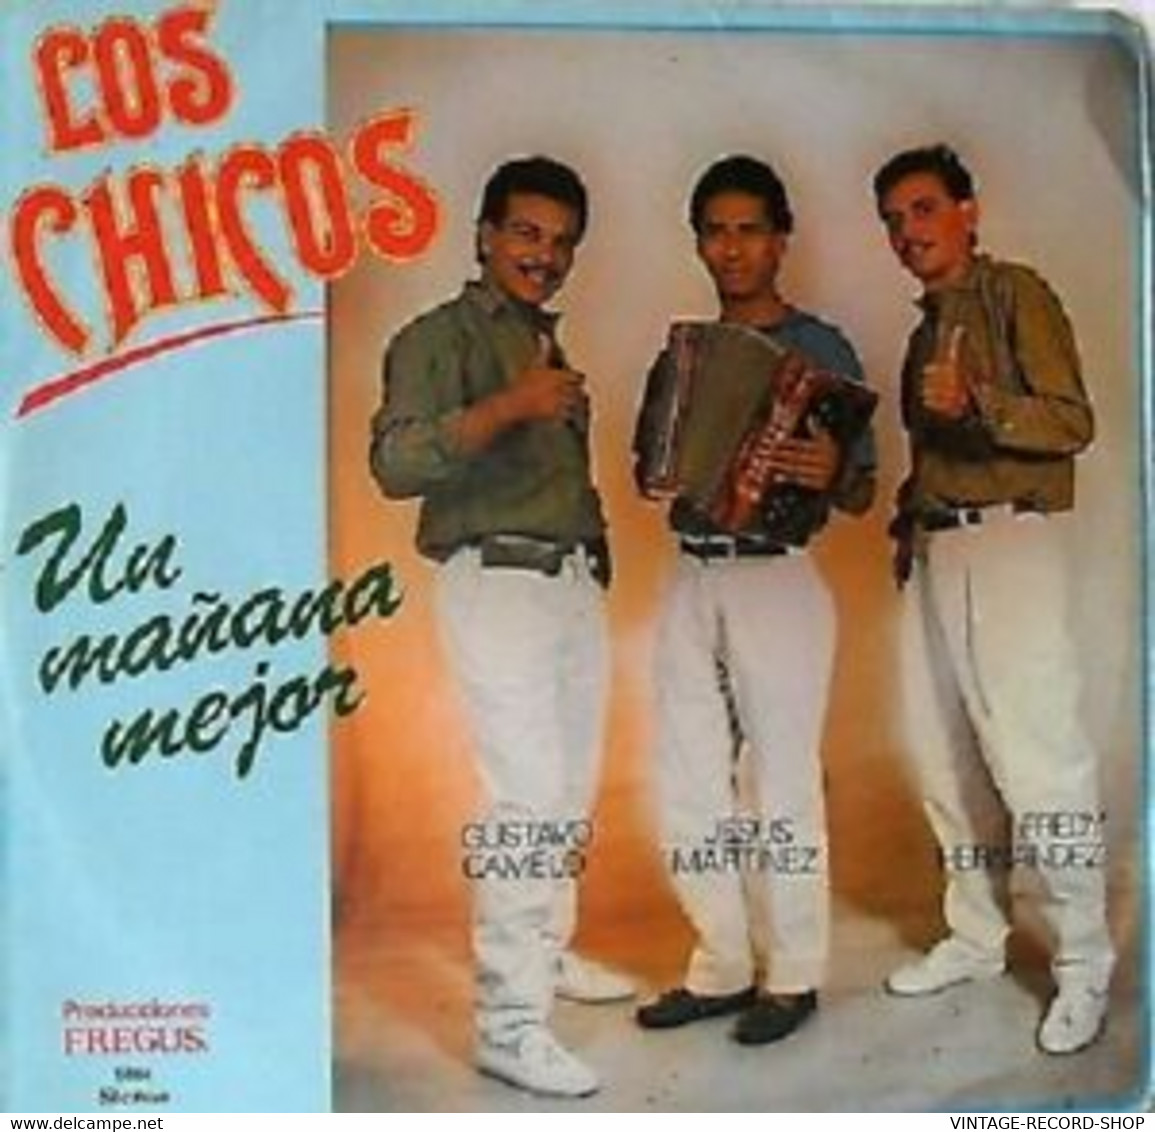 LOS CHICOS-UN MEJOR MAÑANA- PASEOS-MERENGUE-VALLENATO VICTORIA VG+LATIN MUSIC - Musiche Del Mondo